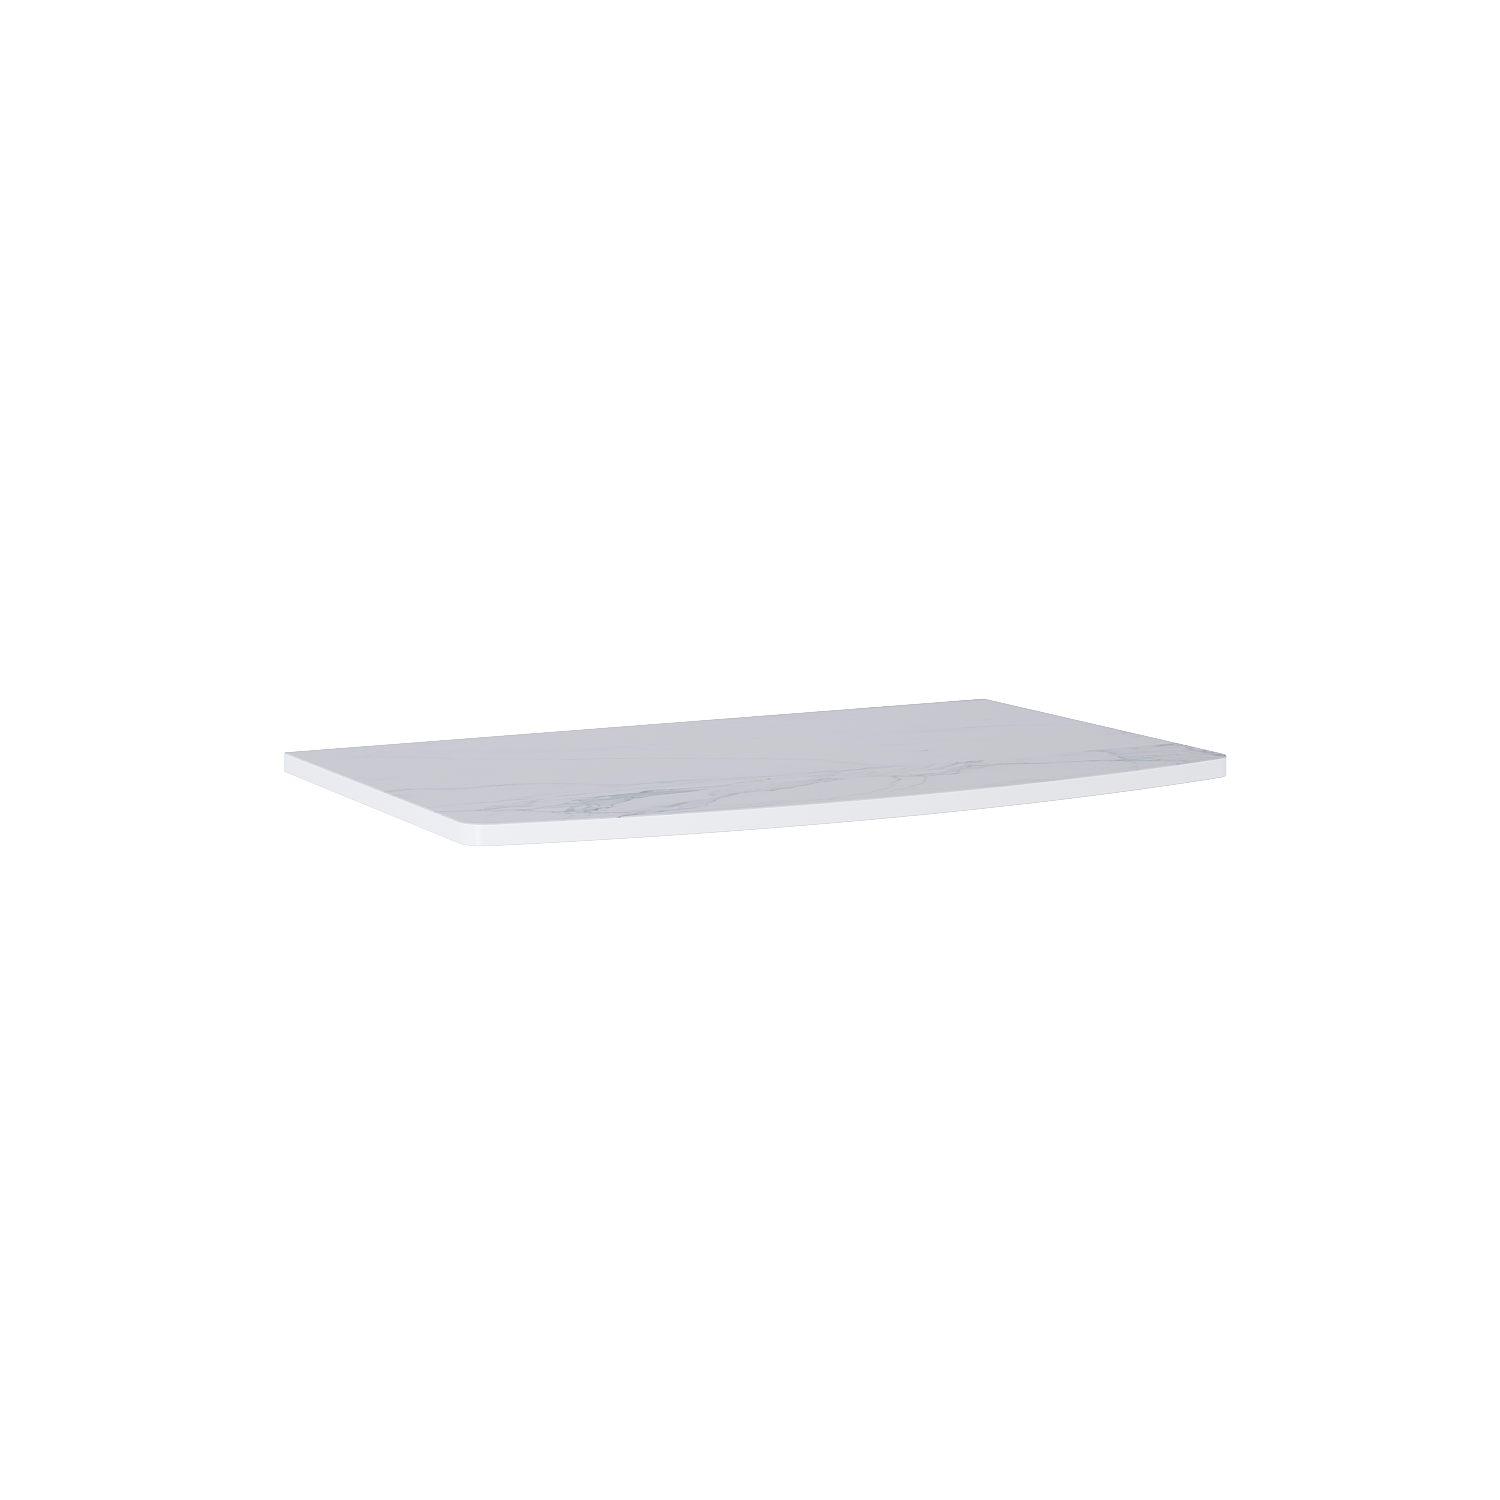 Blat Marmur Elita Calacatta Rolly 81x49,8x2 cm white mat 167798